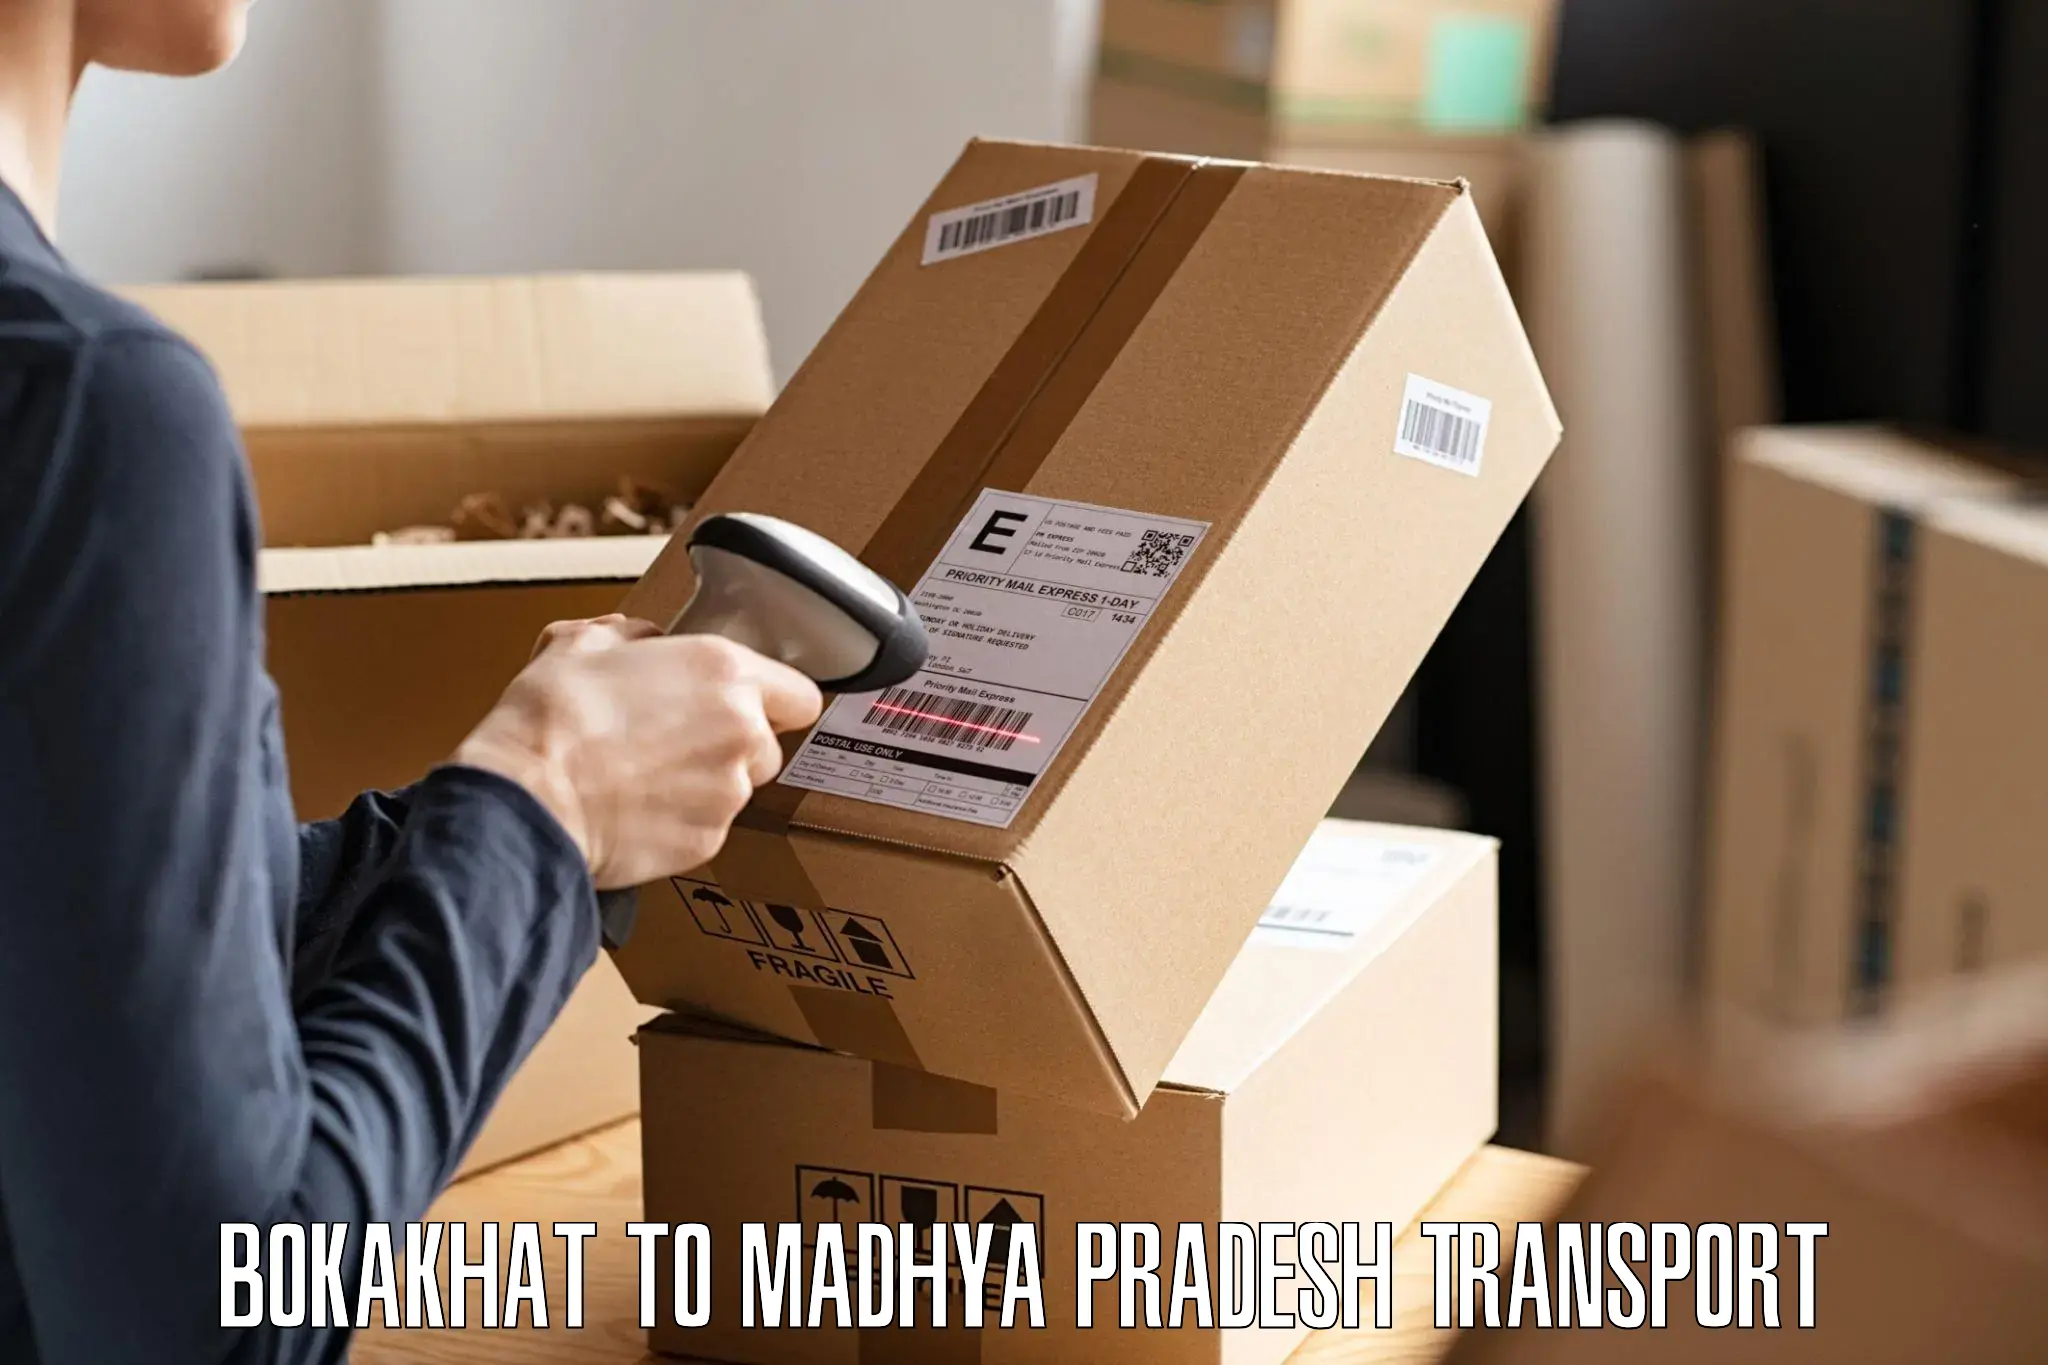 Shipping partner Bokakhat to Nainpur